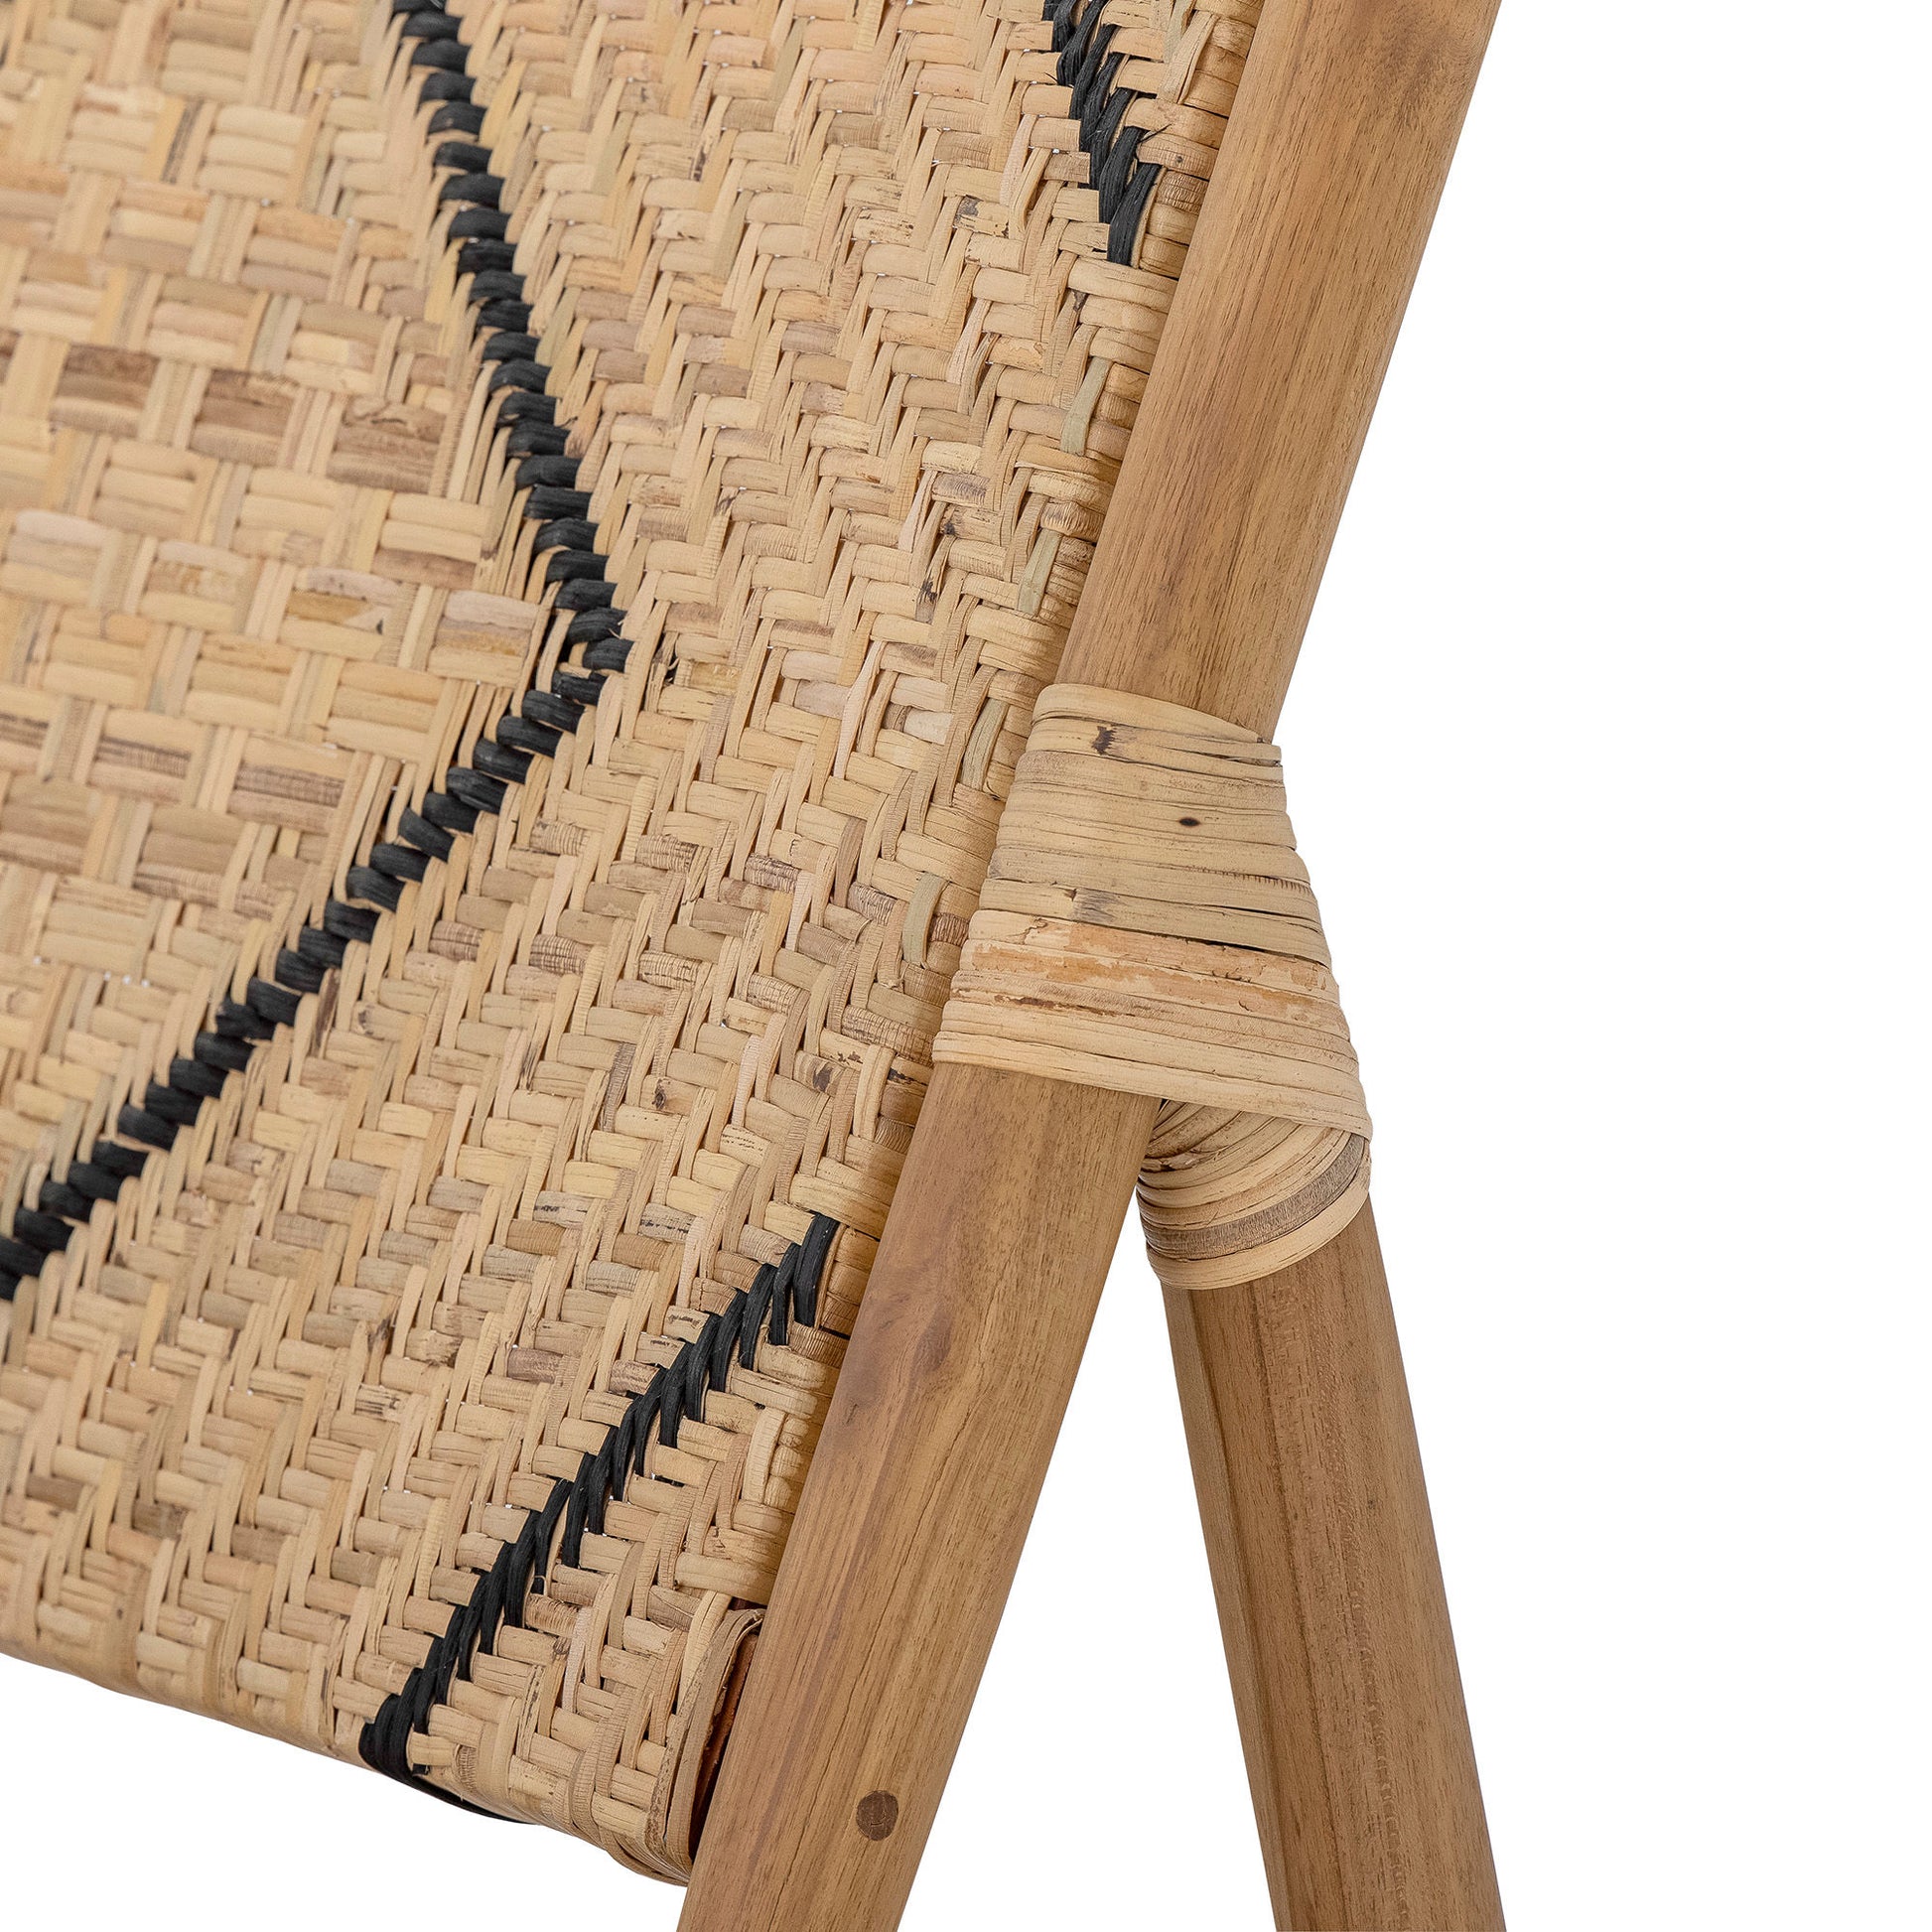 Chaise lounge en teak LENNOX Lennox Lounge Chair, Nature, TeakMaison Bloom Concept 